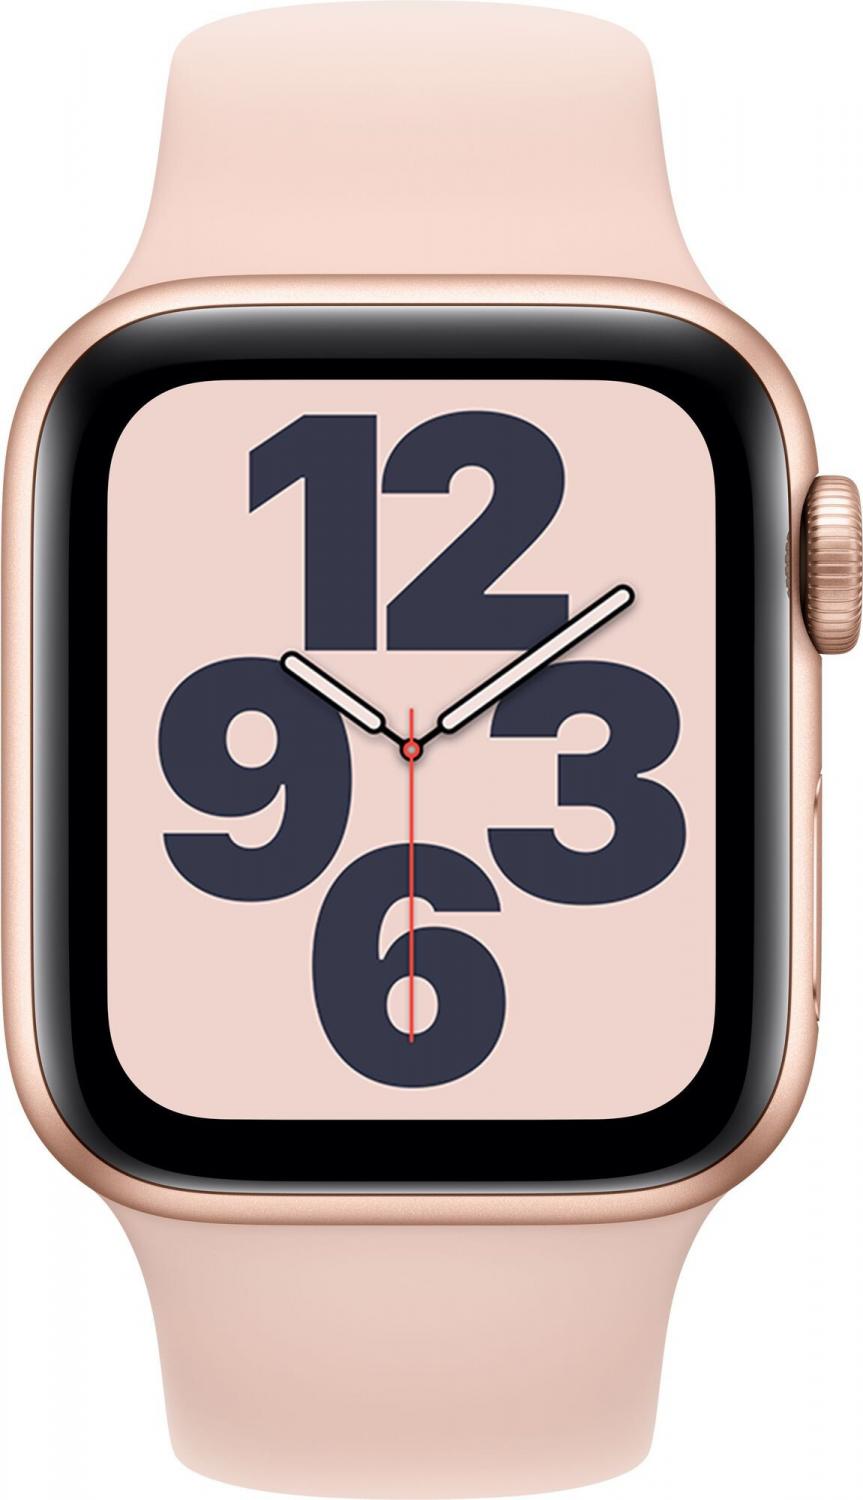 Умные часы Apple Watch SE GPS 40mm Aluminum Case with Sport Band Gold (Золотистый/розовый песок)